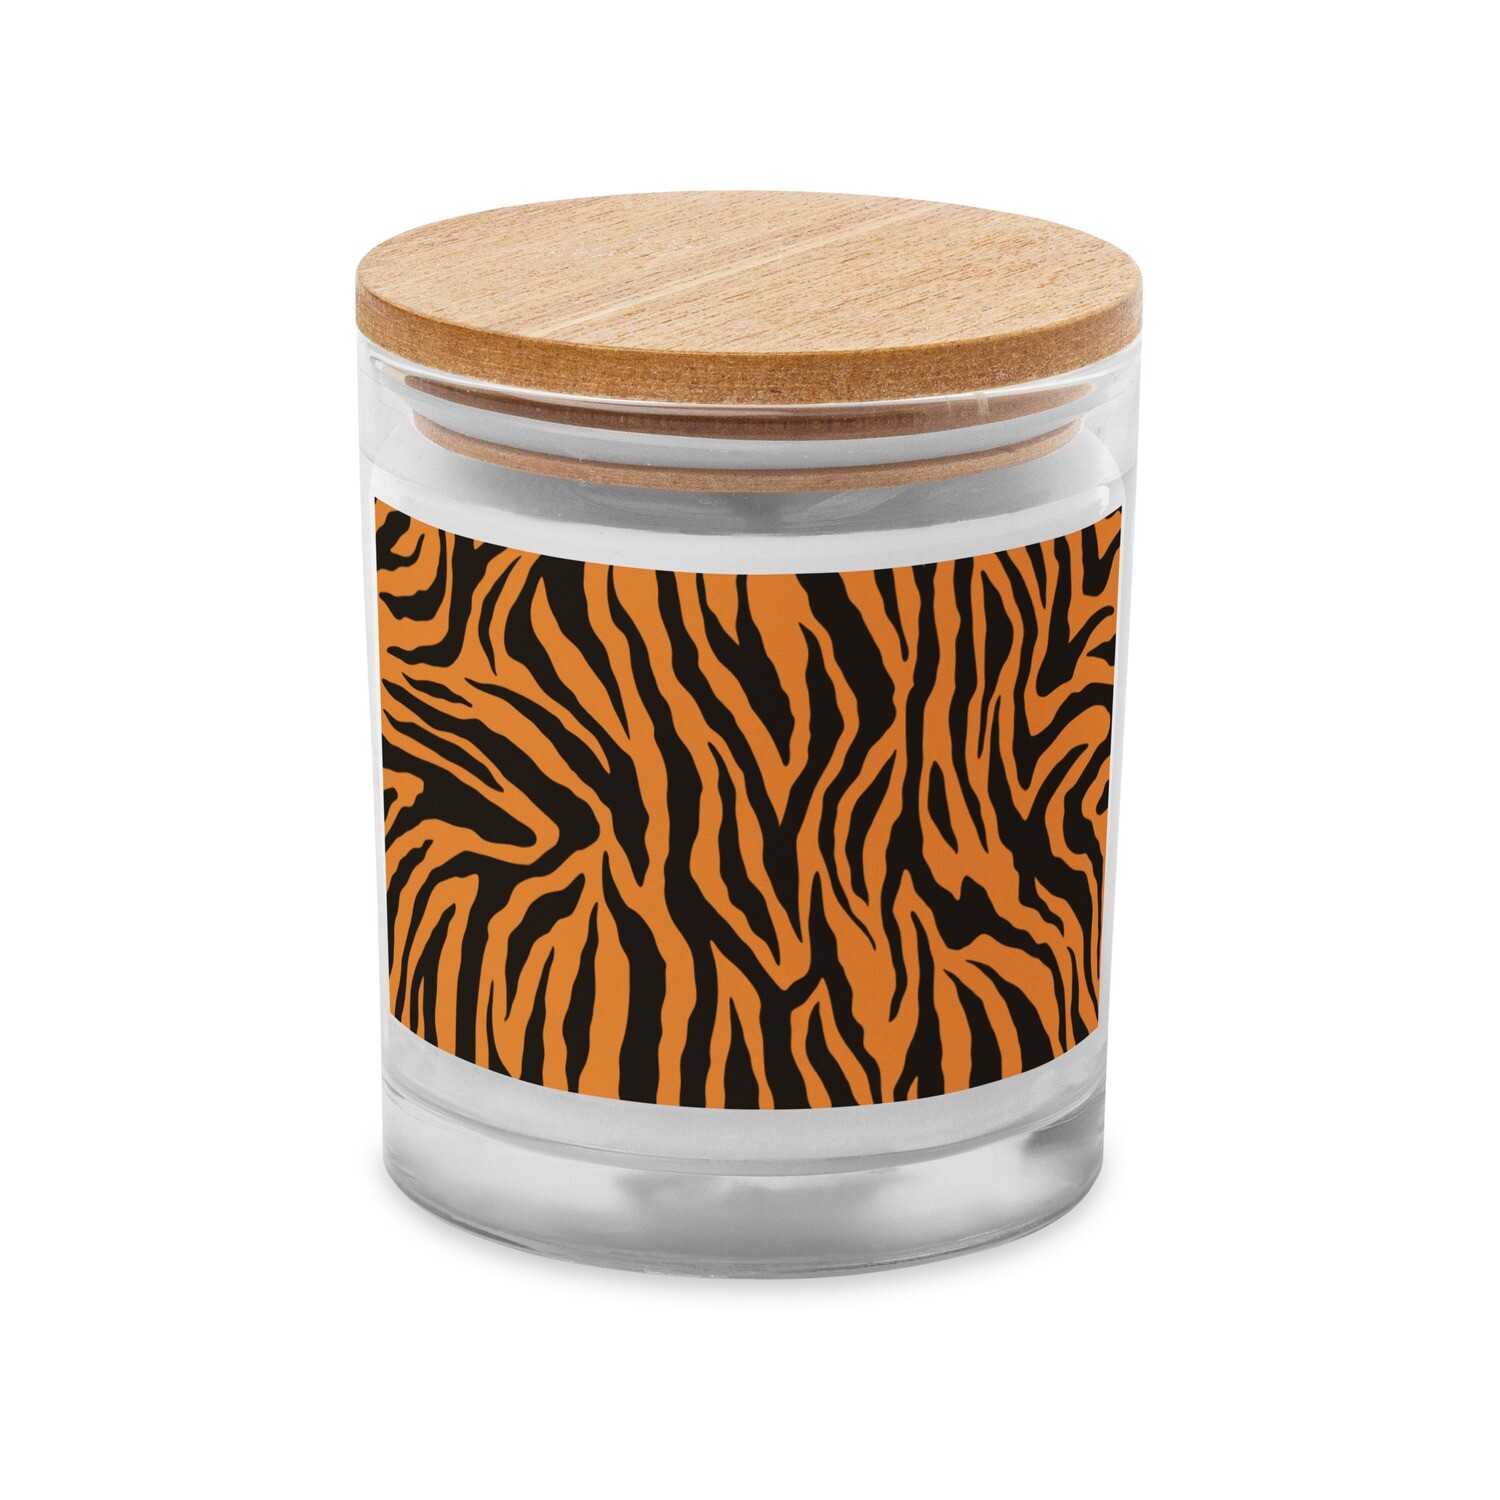 Glass jar candle - Bengal Tiger Print